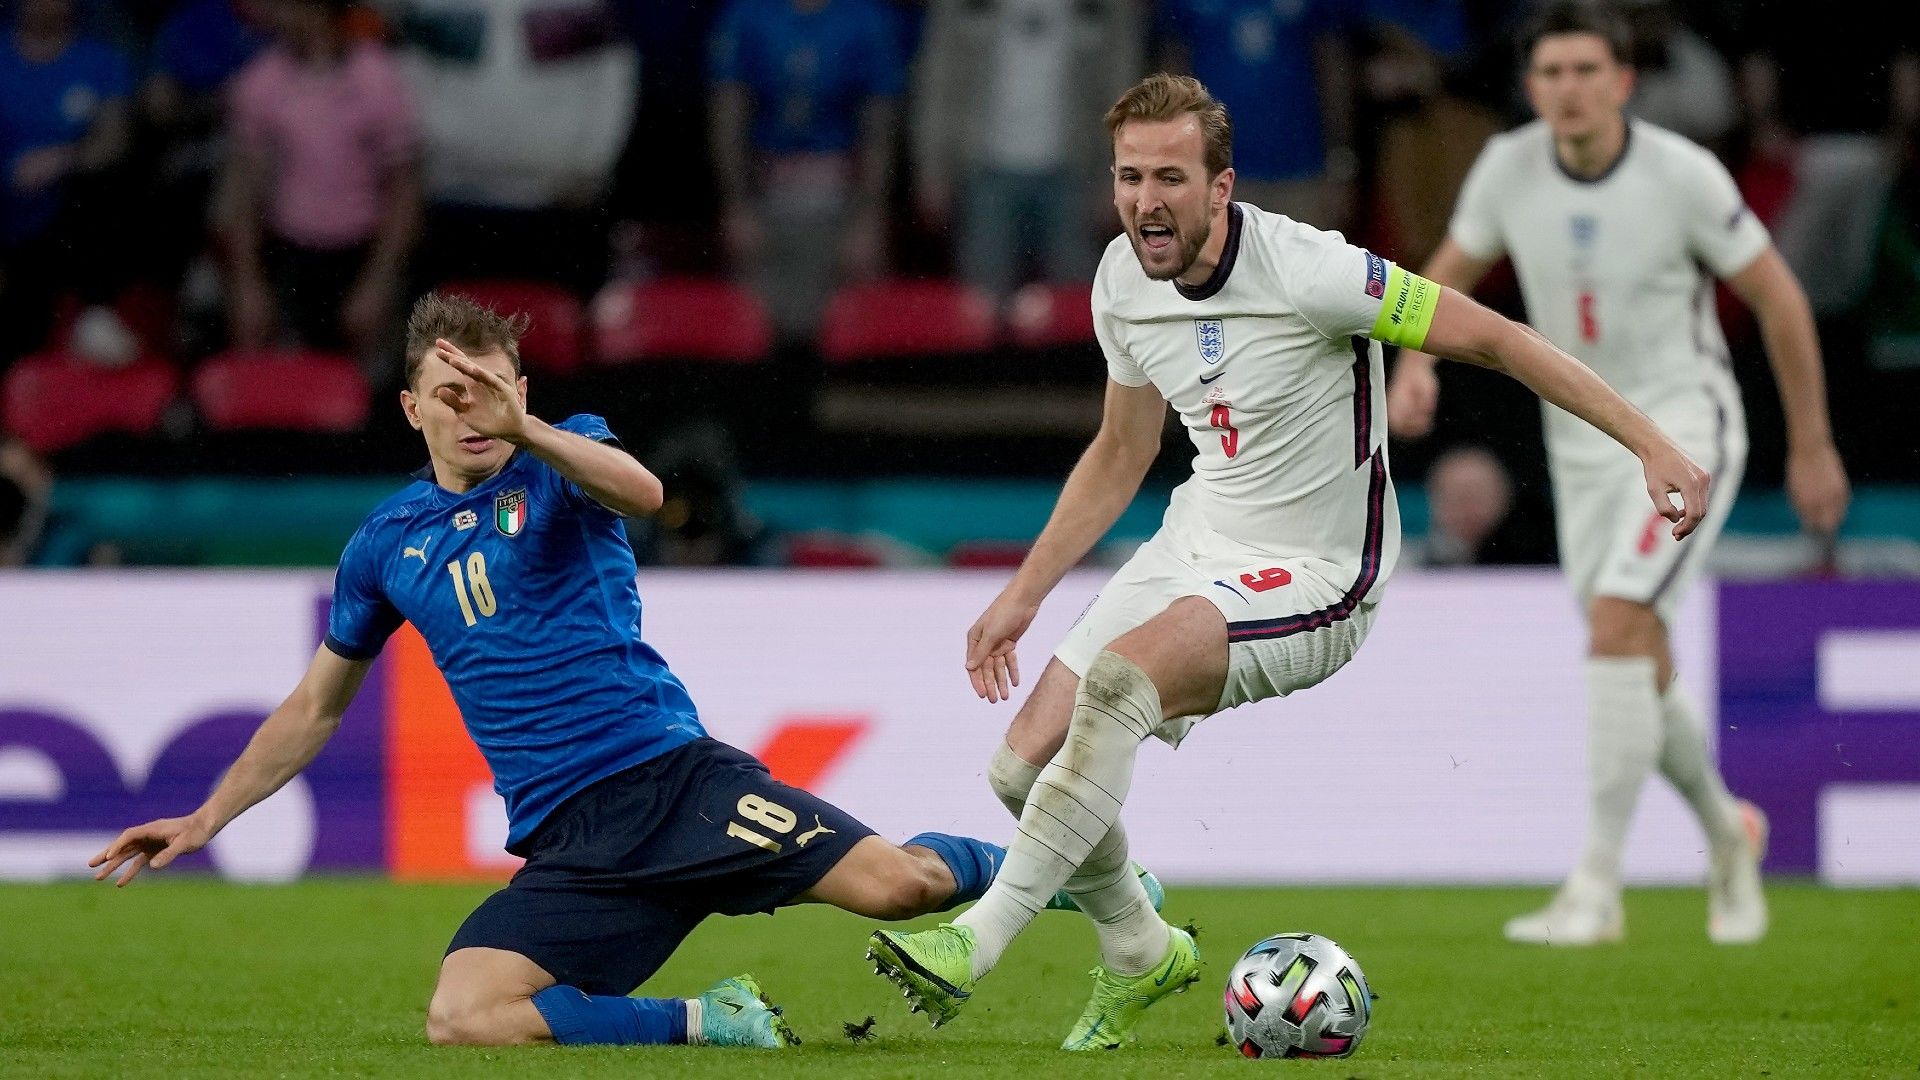 England vs Italy at EURO 2020